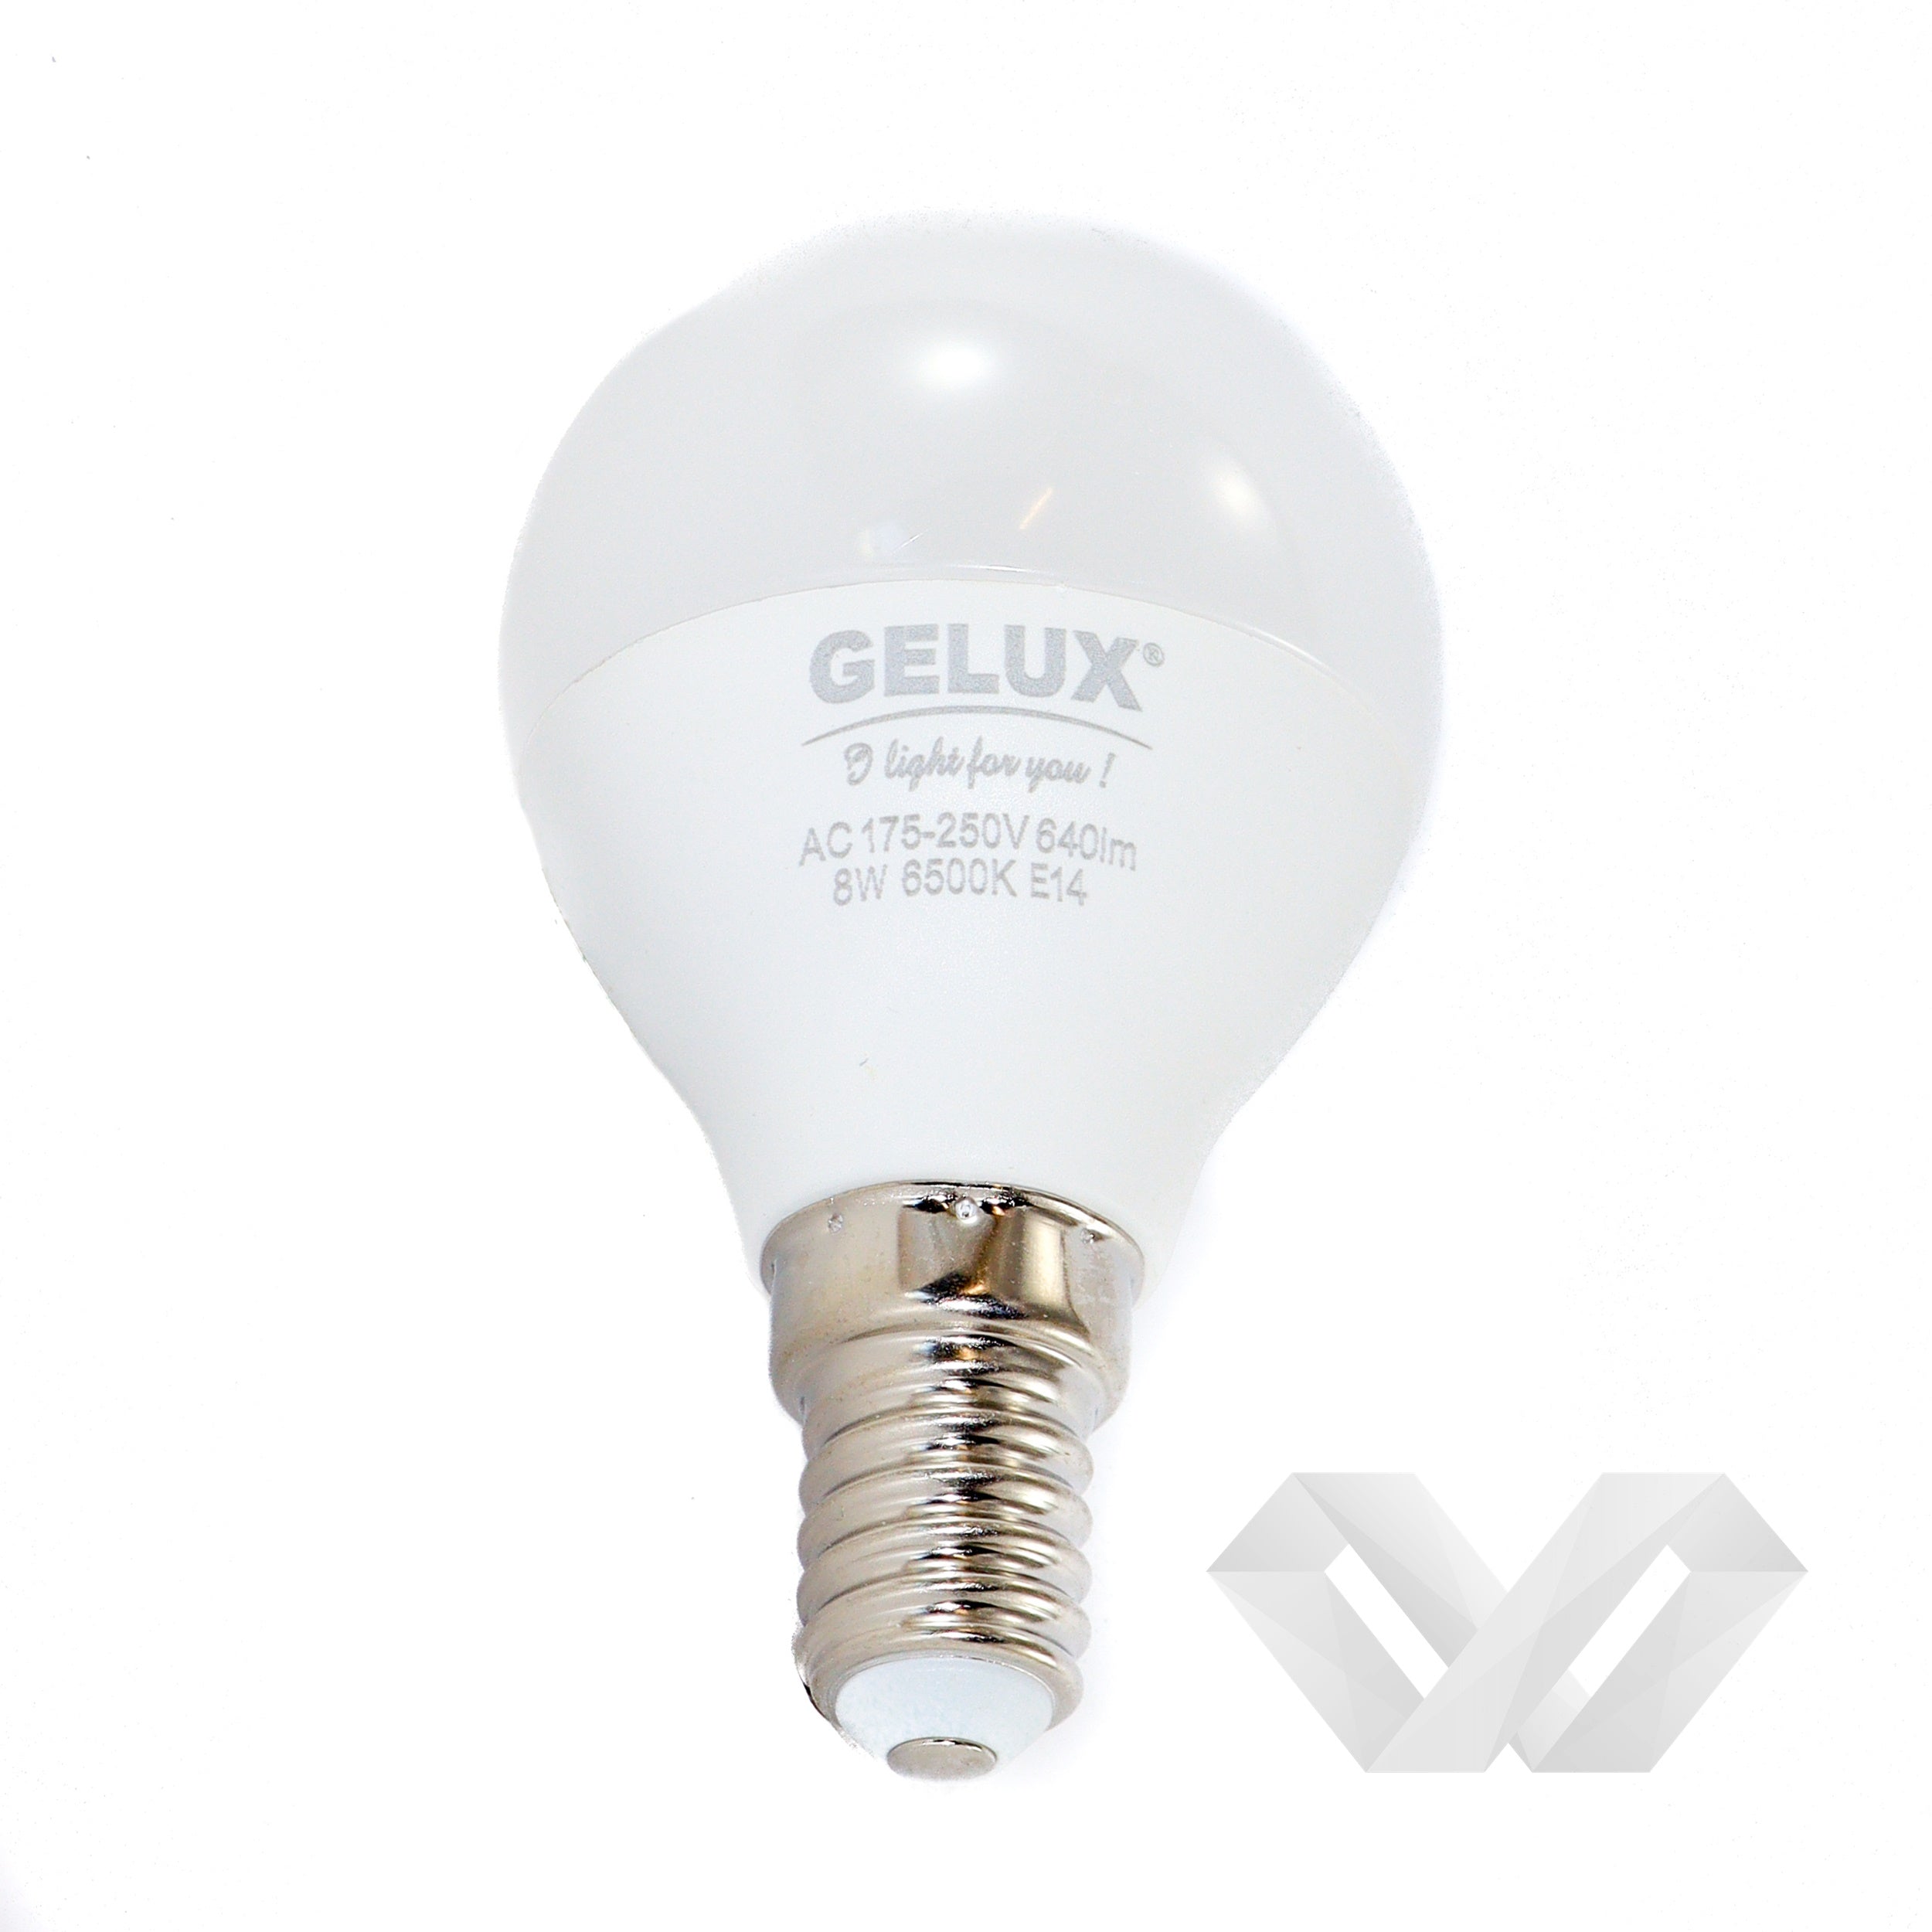 Bec LED Sferic 5W E27 ECOLED, echivalent 40W lumina calda, Gelux